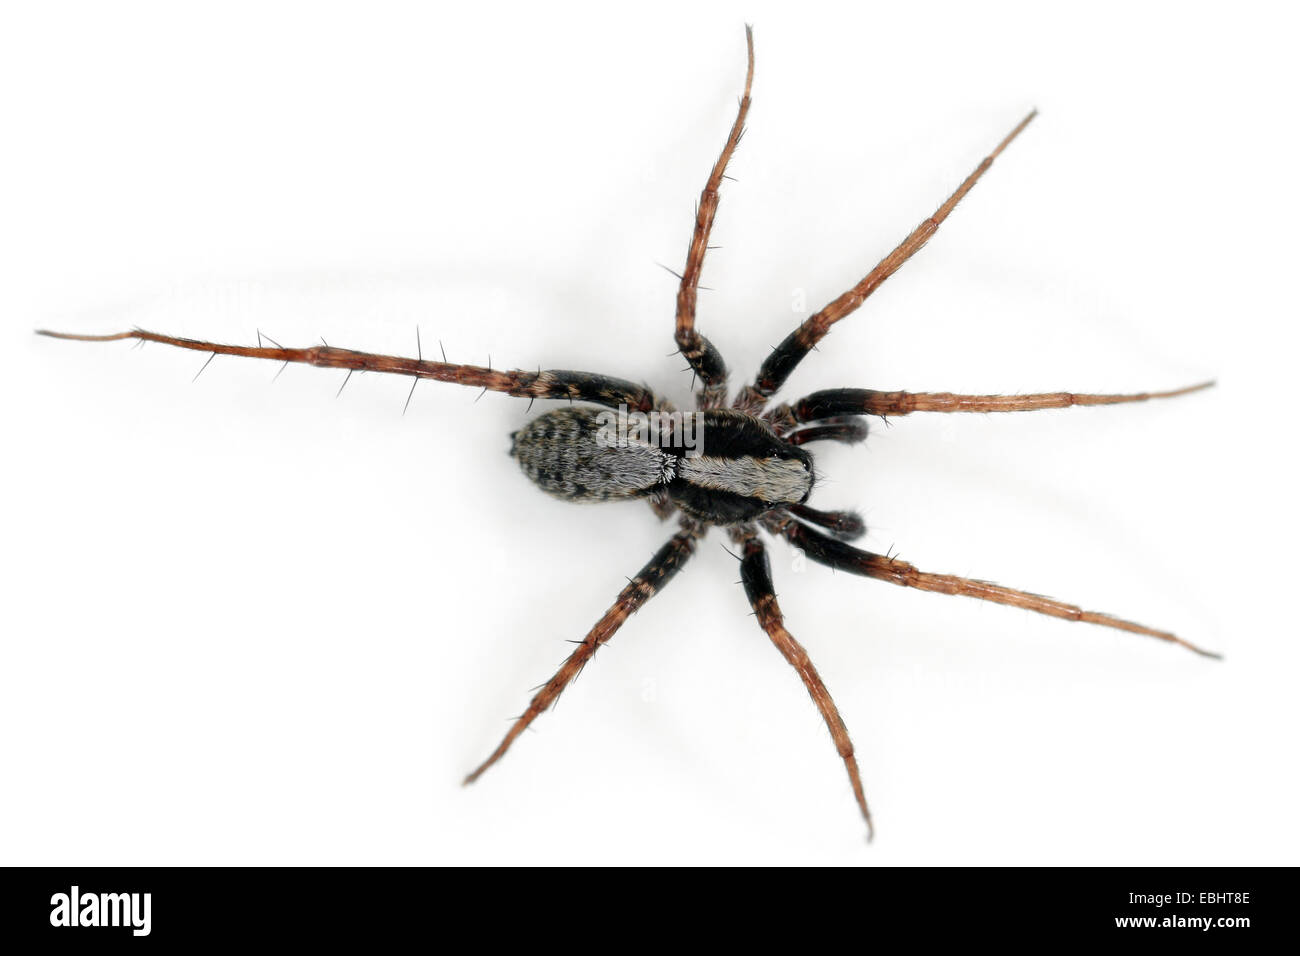 Pardosa lugubris macho spider sobre fondo blanco. Familia Lycosidae, arañas lobo. Usted puede ver que esta araña tiene una pierna que falta. Foto de stock